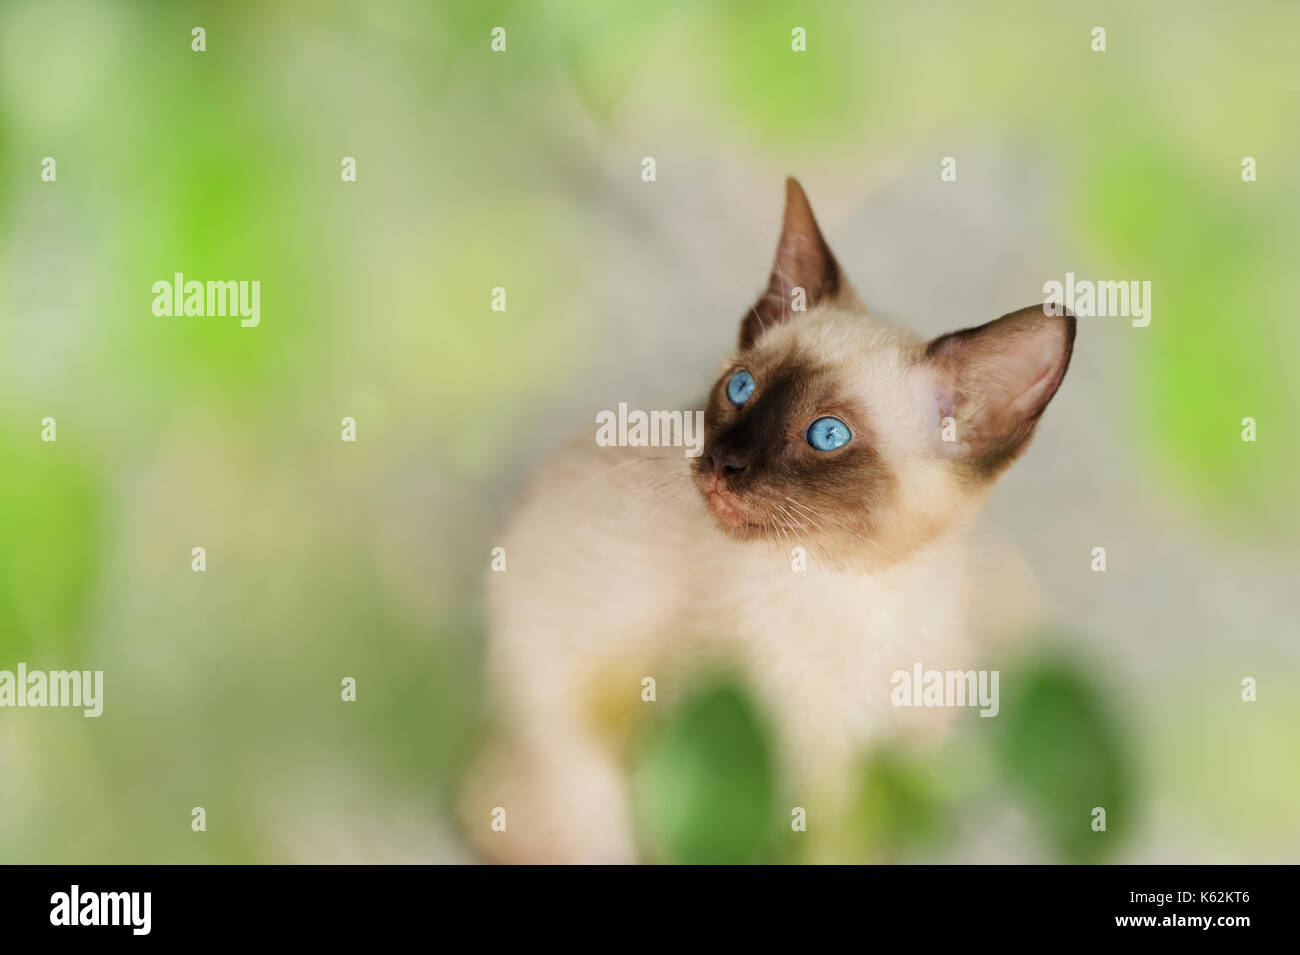 Kätzchen Siamkatze ist eine Siam kitty Katze mit strahlend blauen Augen. Stockfoto